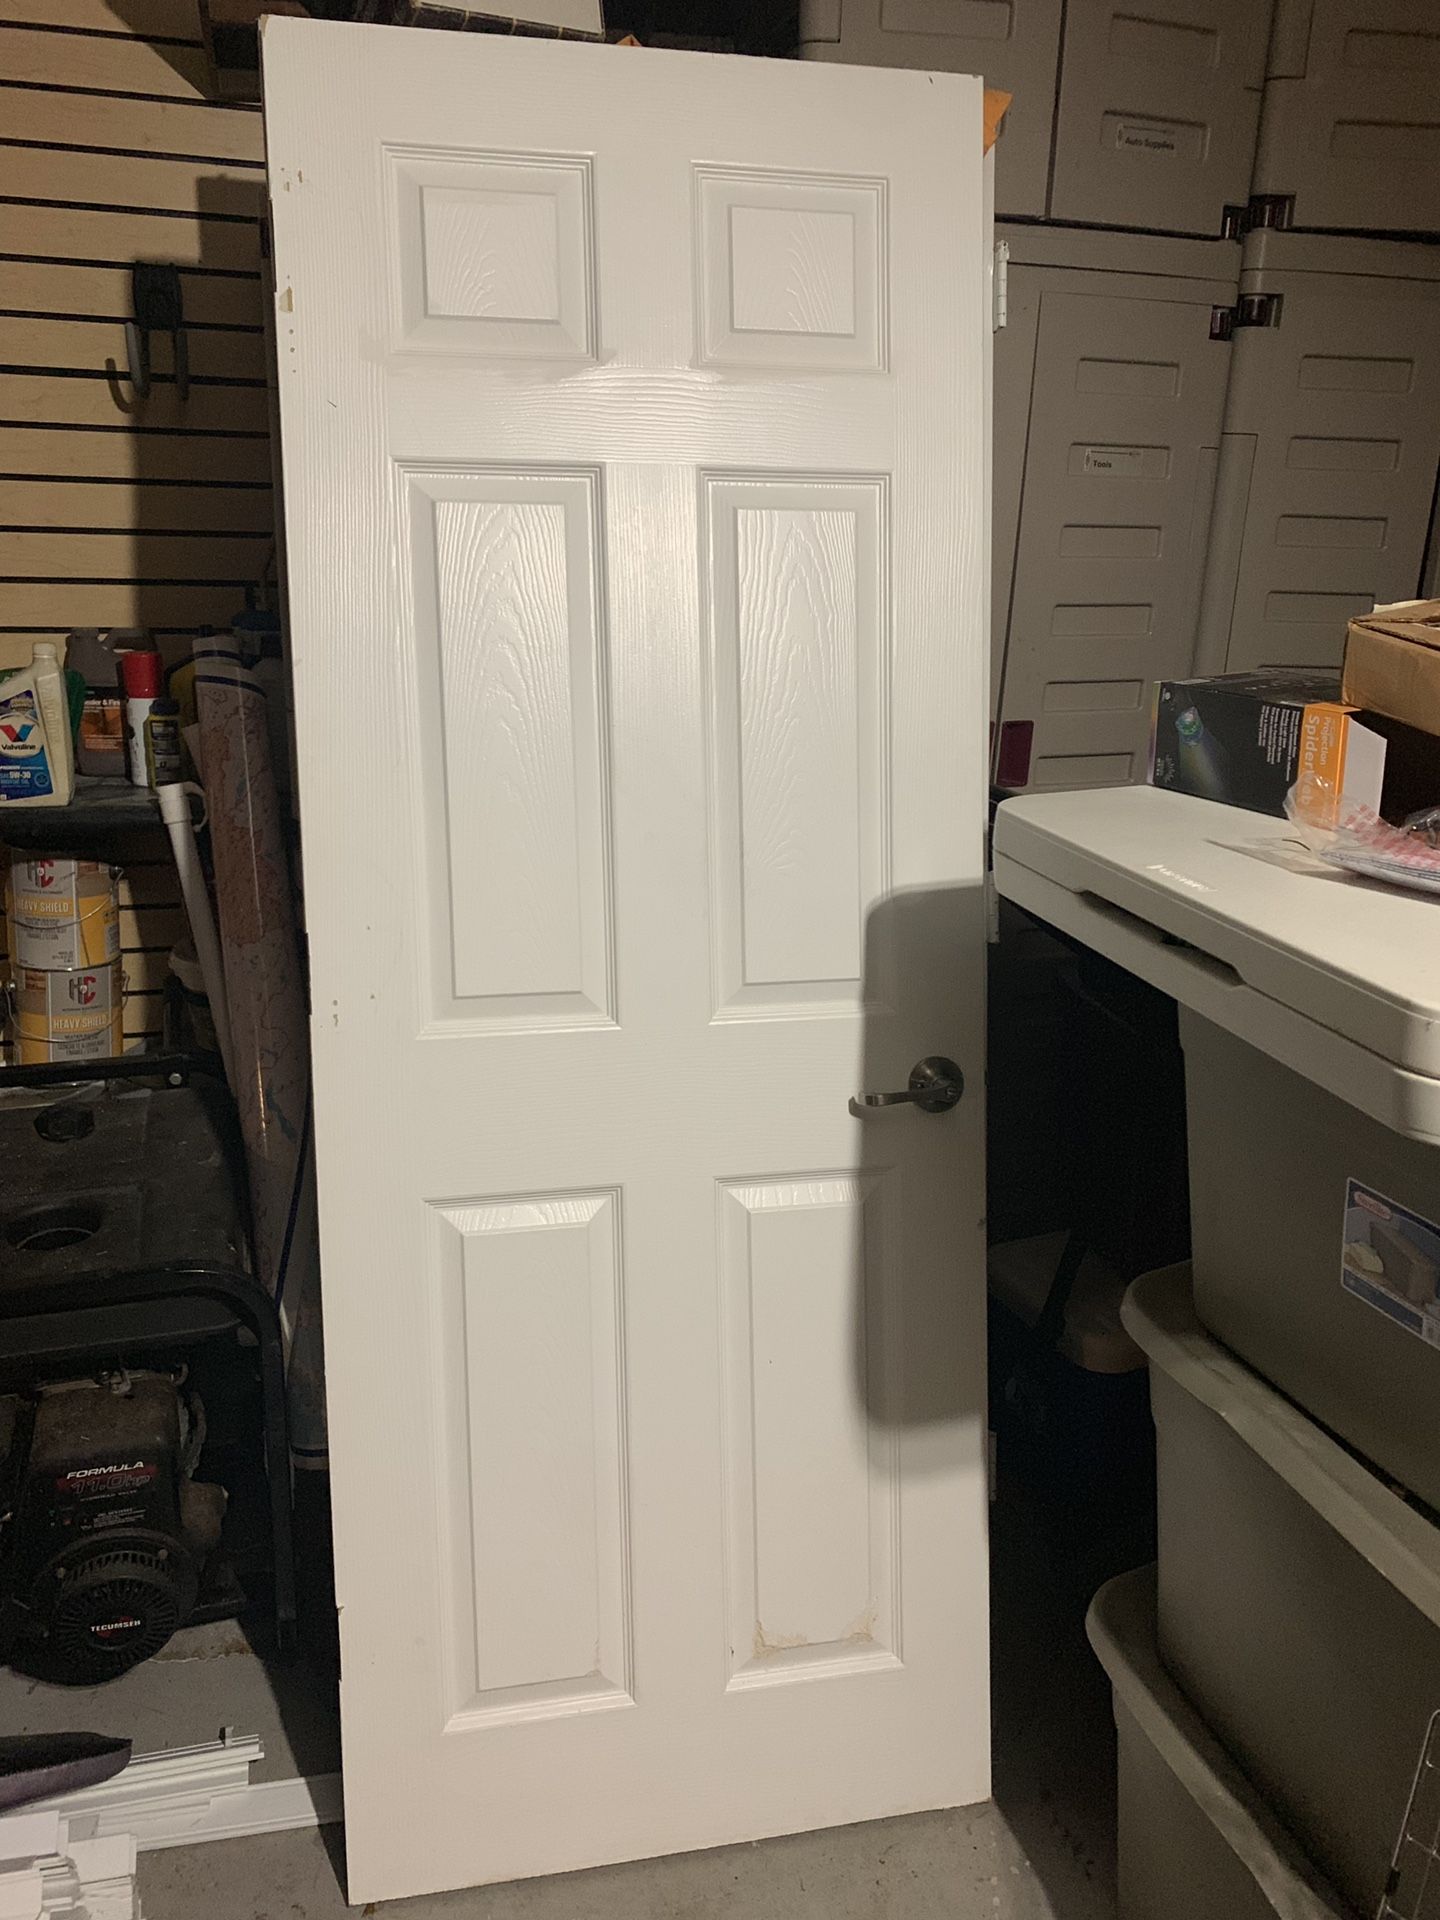 7 doors and 1 set of bi-fold closet doors